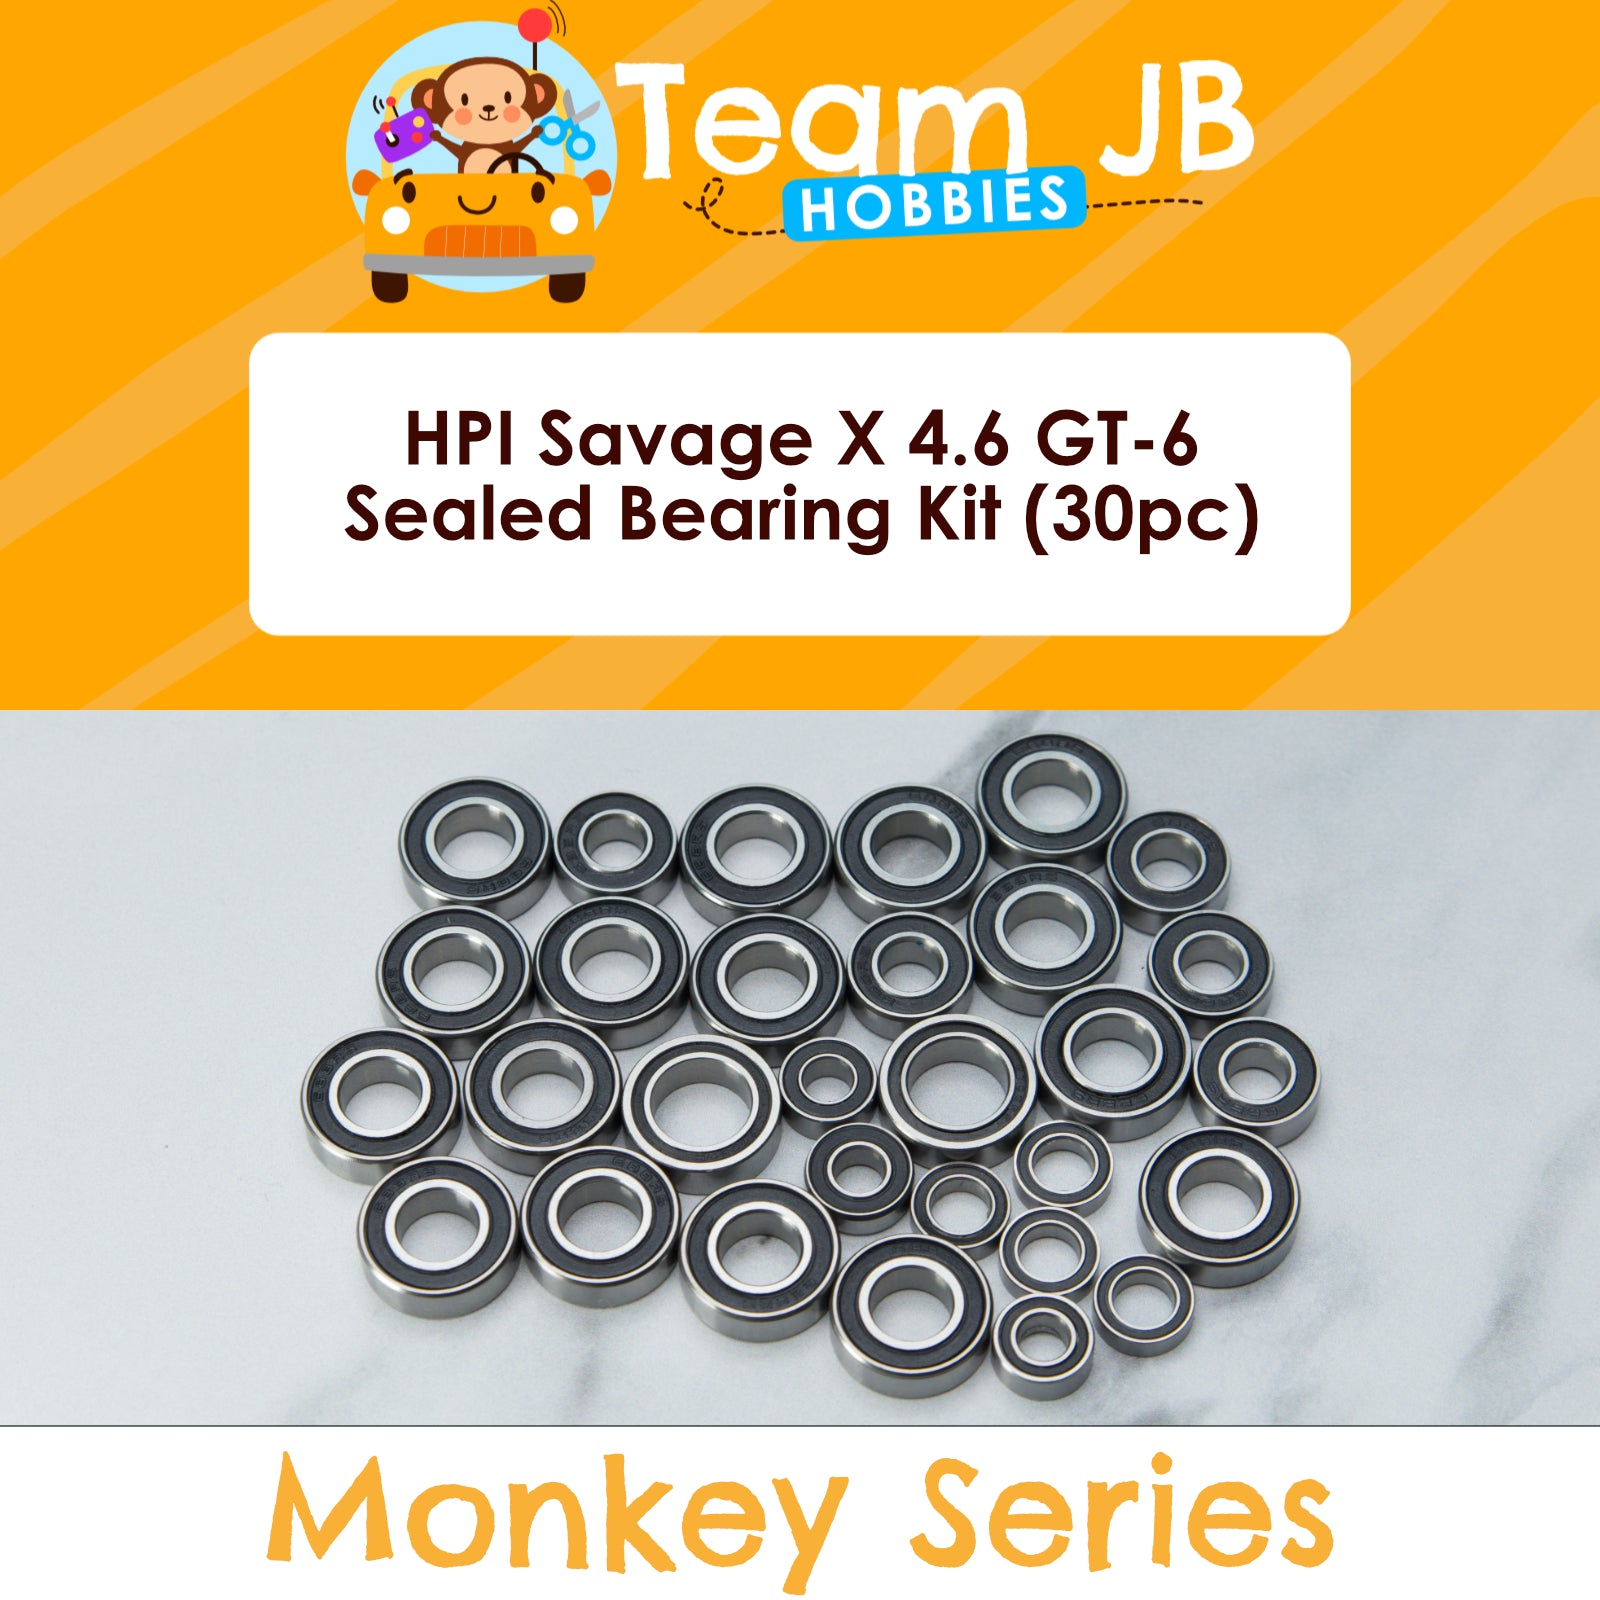 HPI Savage X 4.6 GT-6 - Sealed Bearing Kit